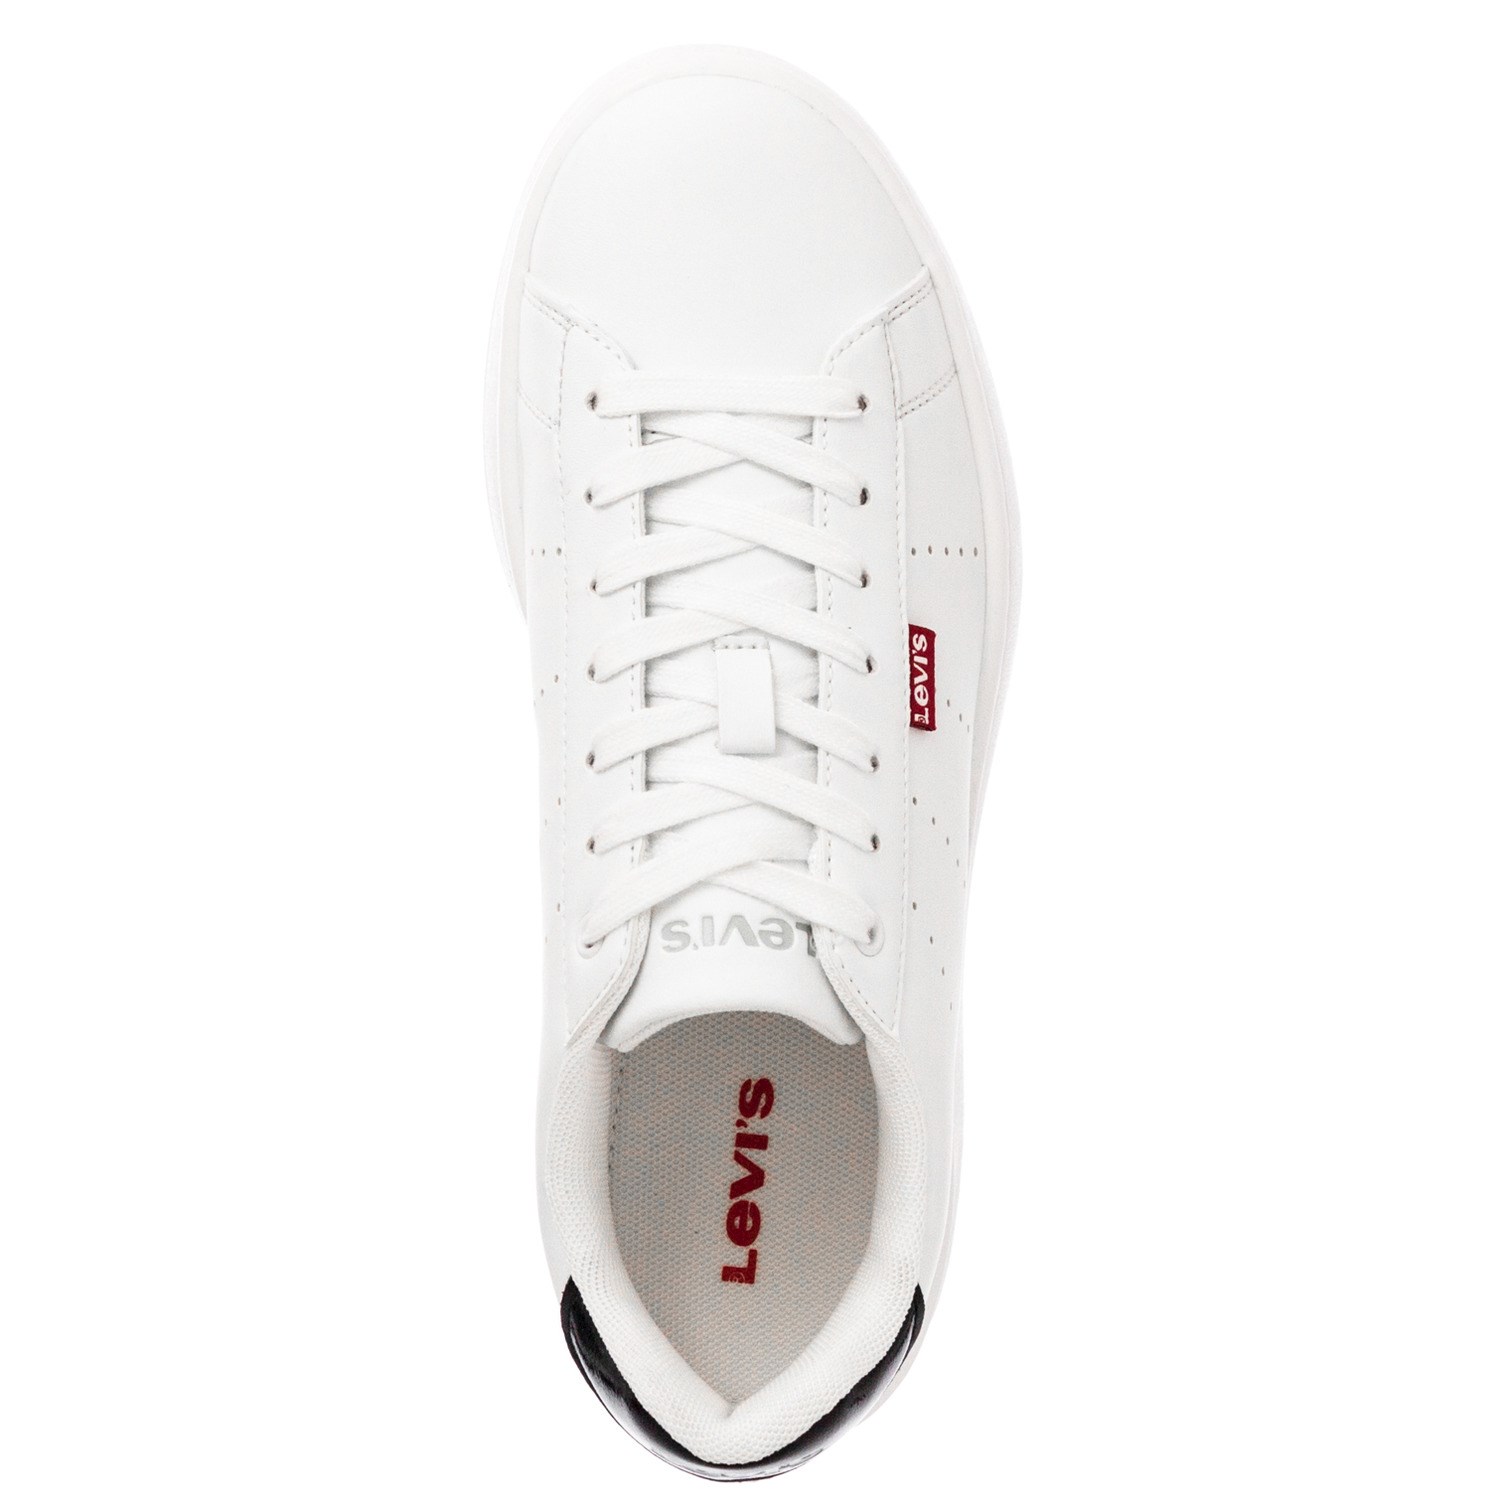 Γυναικείο Sneaker άσπρο Levi's  234665-1794-51